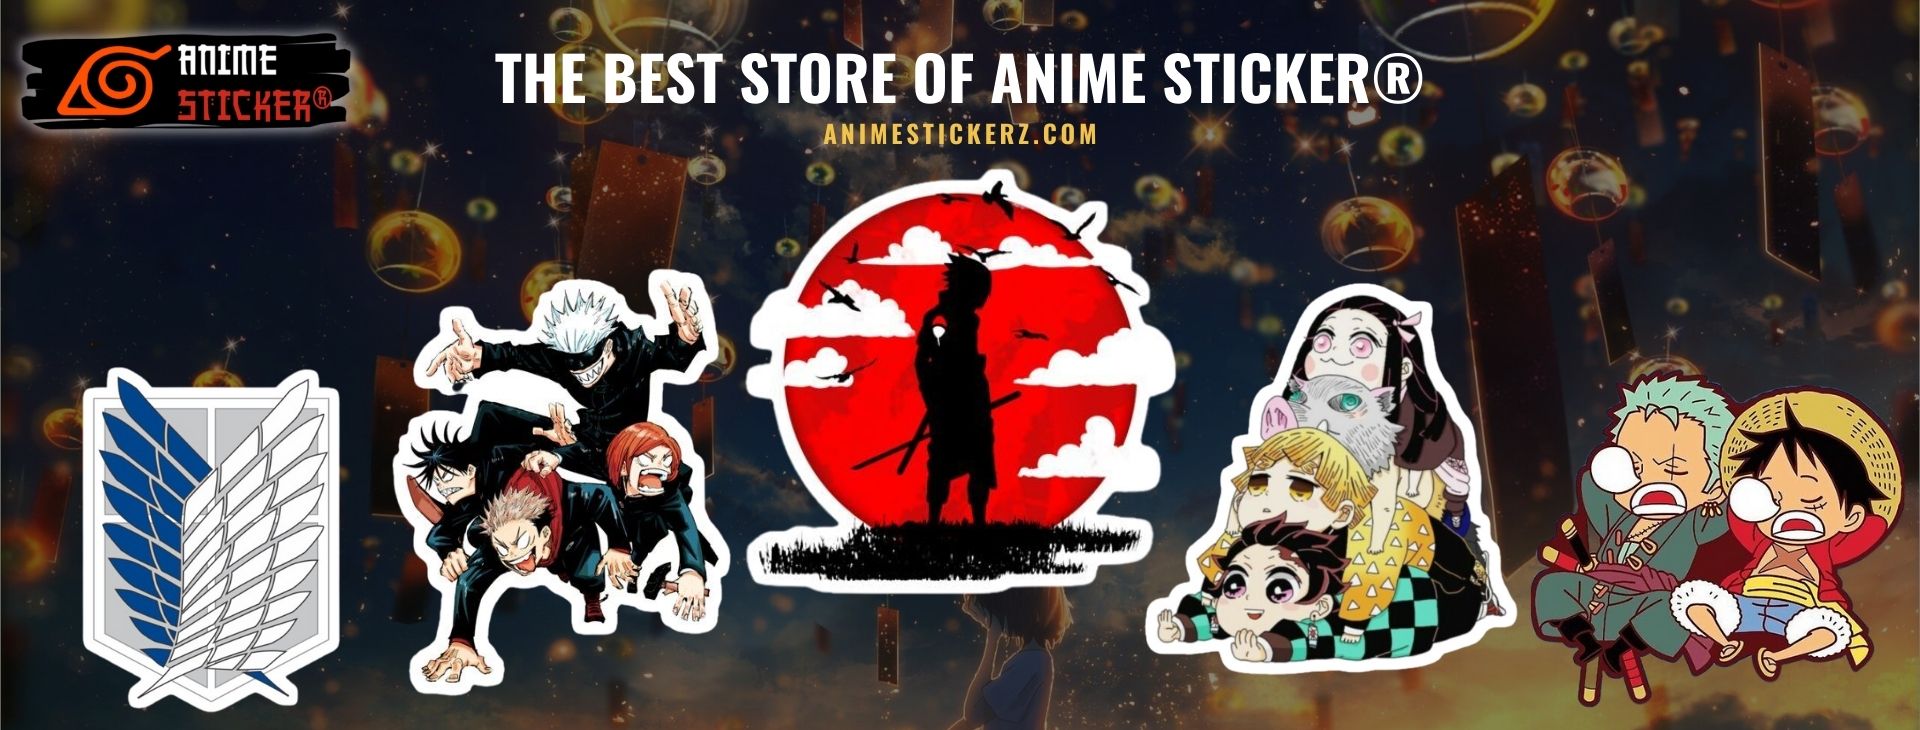 Anime Sticker Web Banner - Anime Stickerz